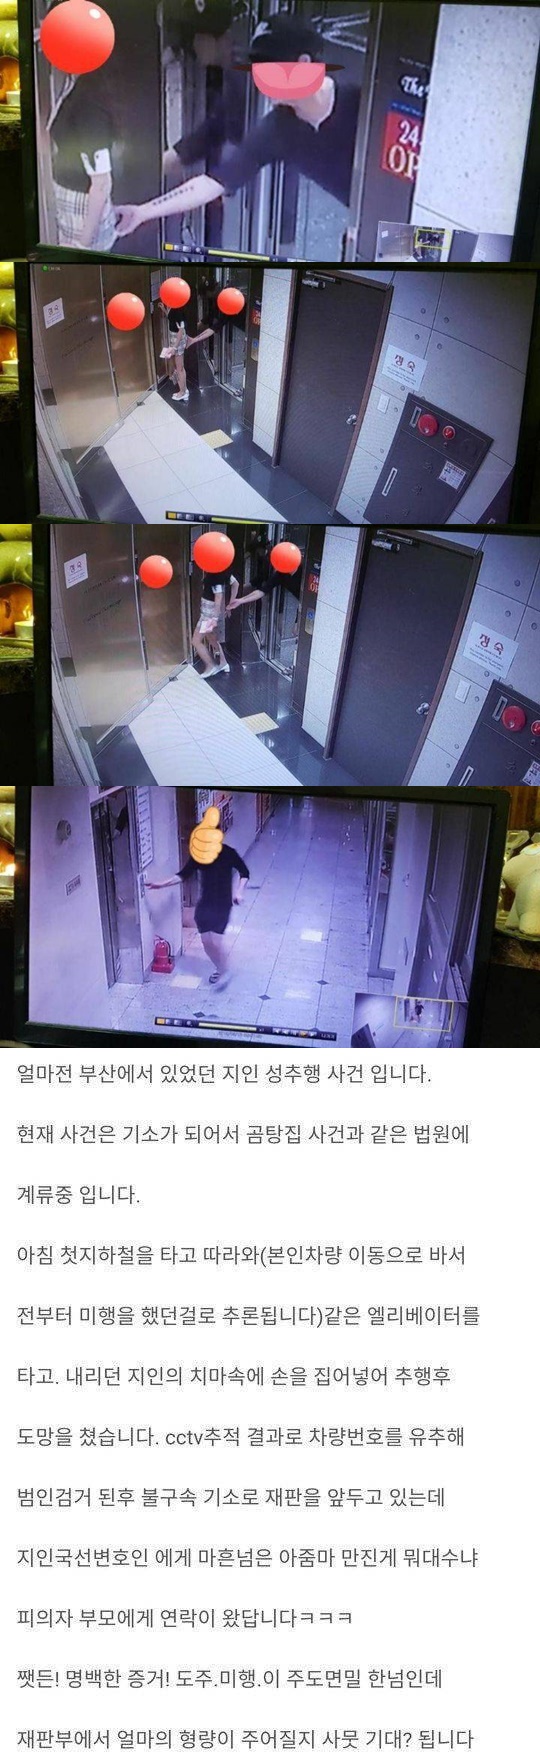 부산 성추행 사건 CCTV